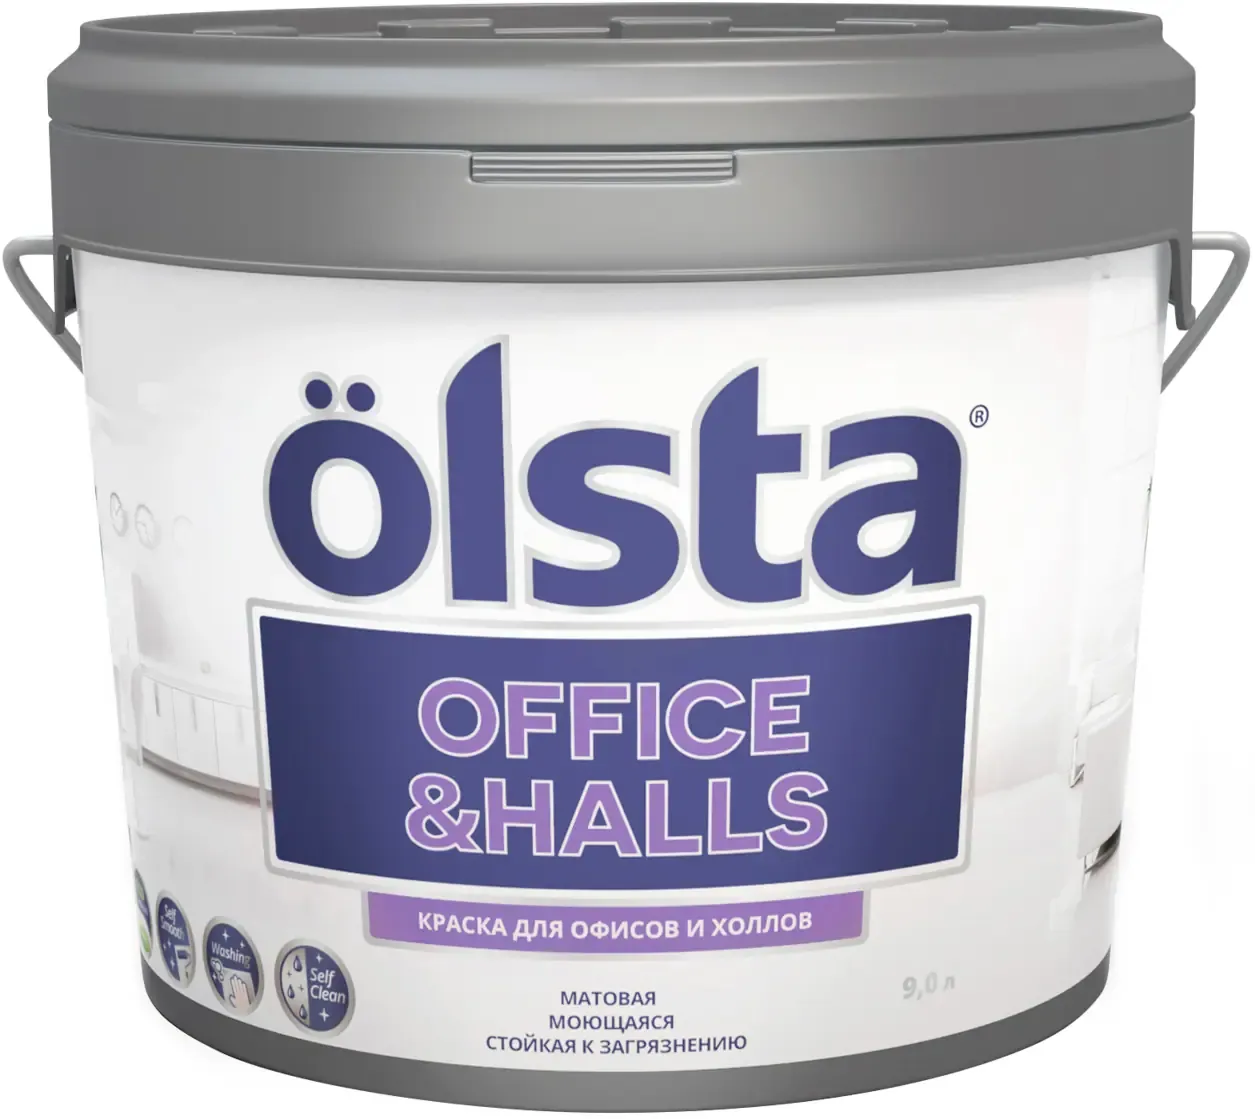 Краска для офисов и холлов Olsta Office & Halls 9 л шелковая светло сиреневая база A №144A Satin Violet шелковисто матов